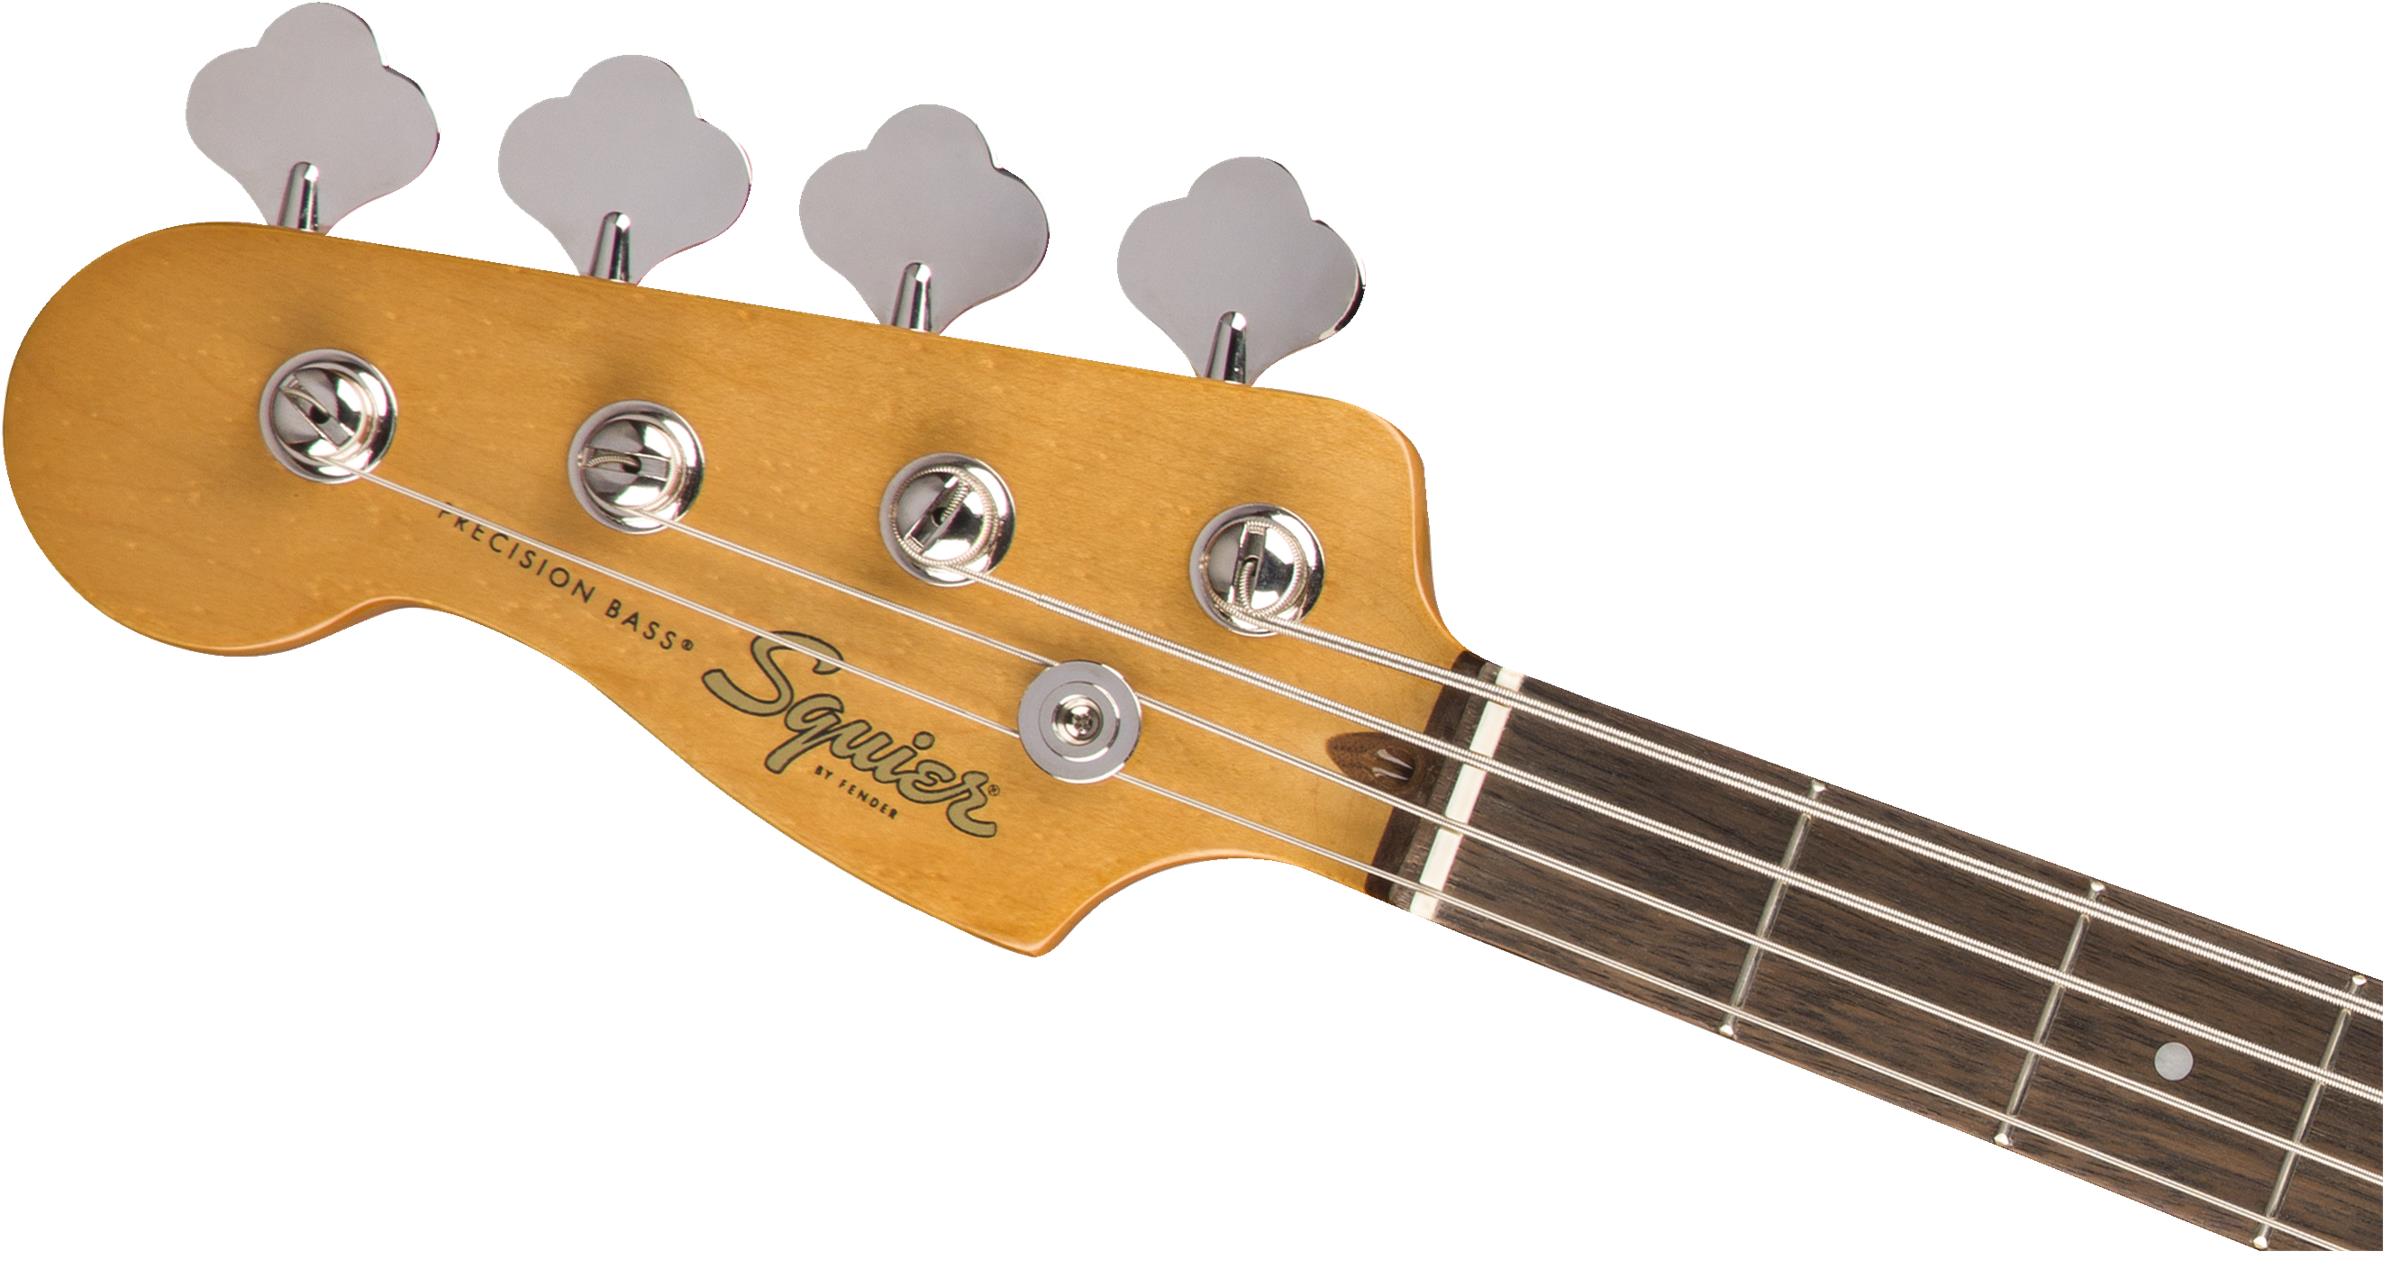 Squier Classic Vibe 60s Precision Bass LEFT 3-Color Sunburst/Laurel